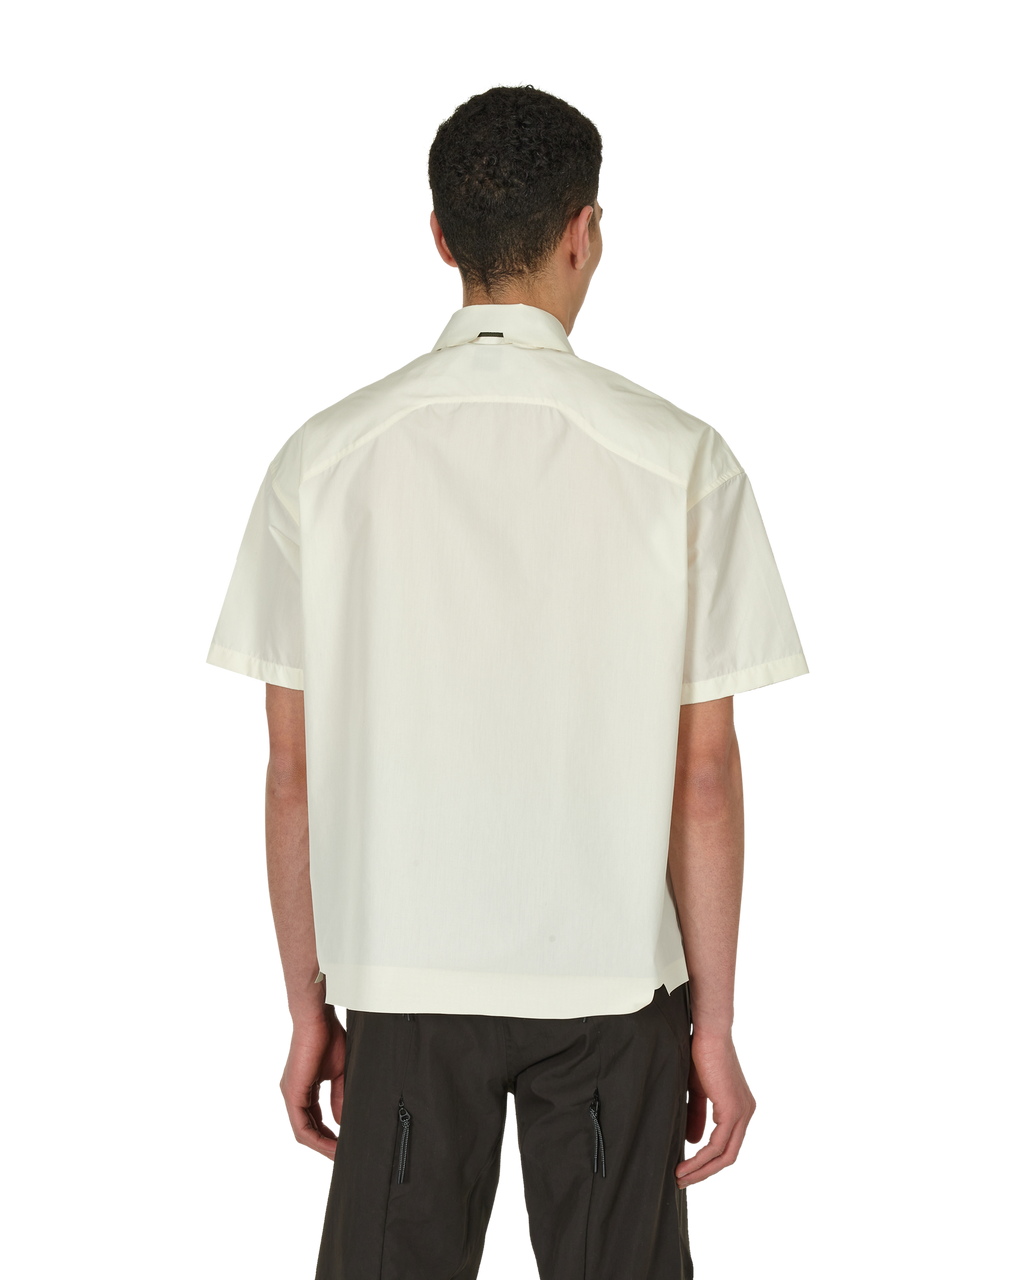 _J.L - A.L_ Cauter Shirt S/s J256251-M-White